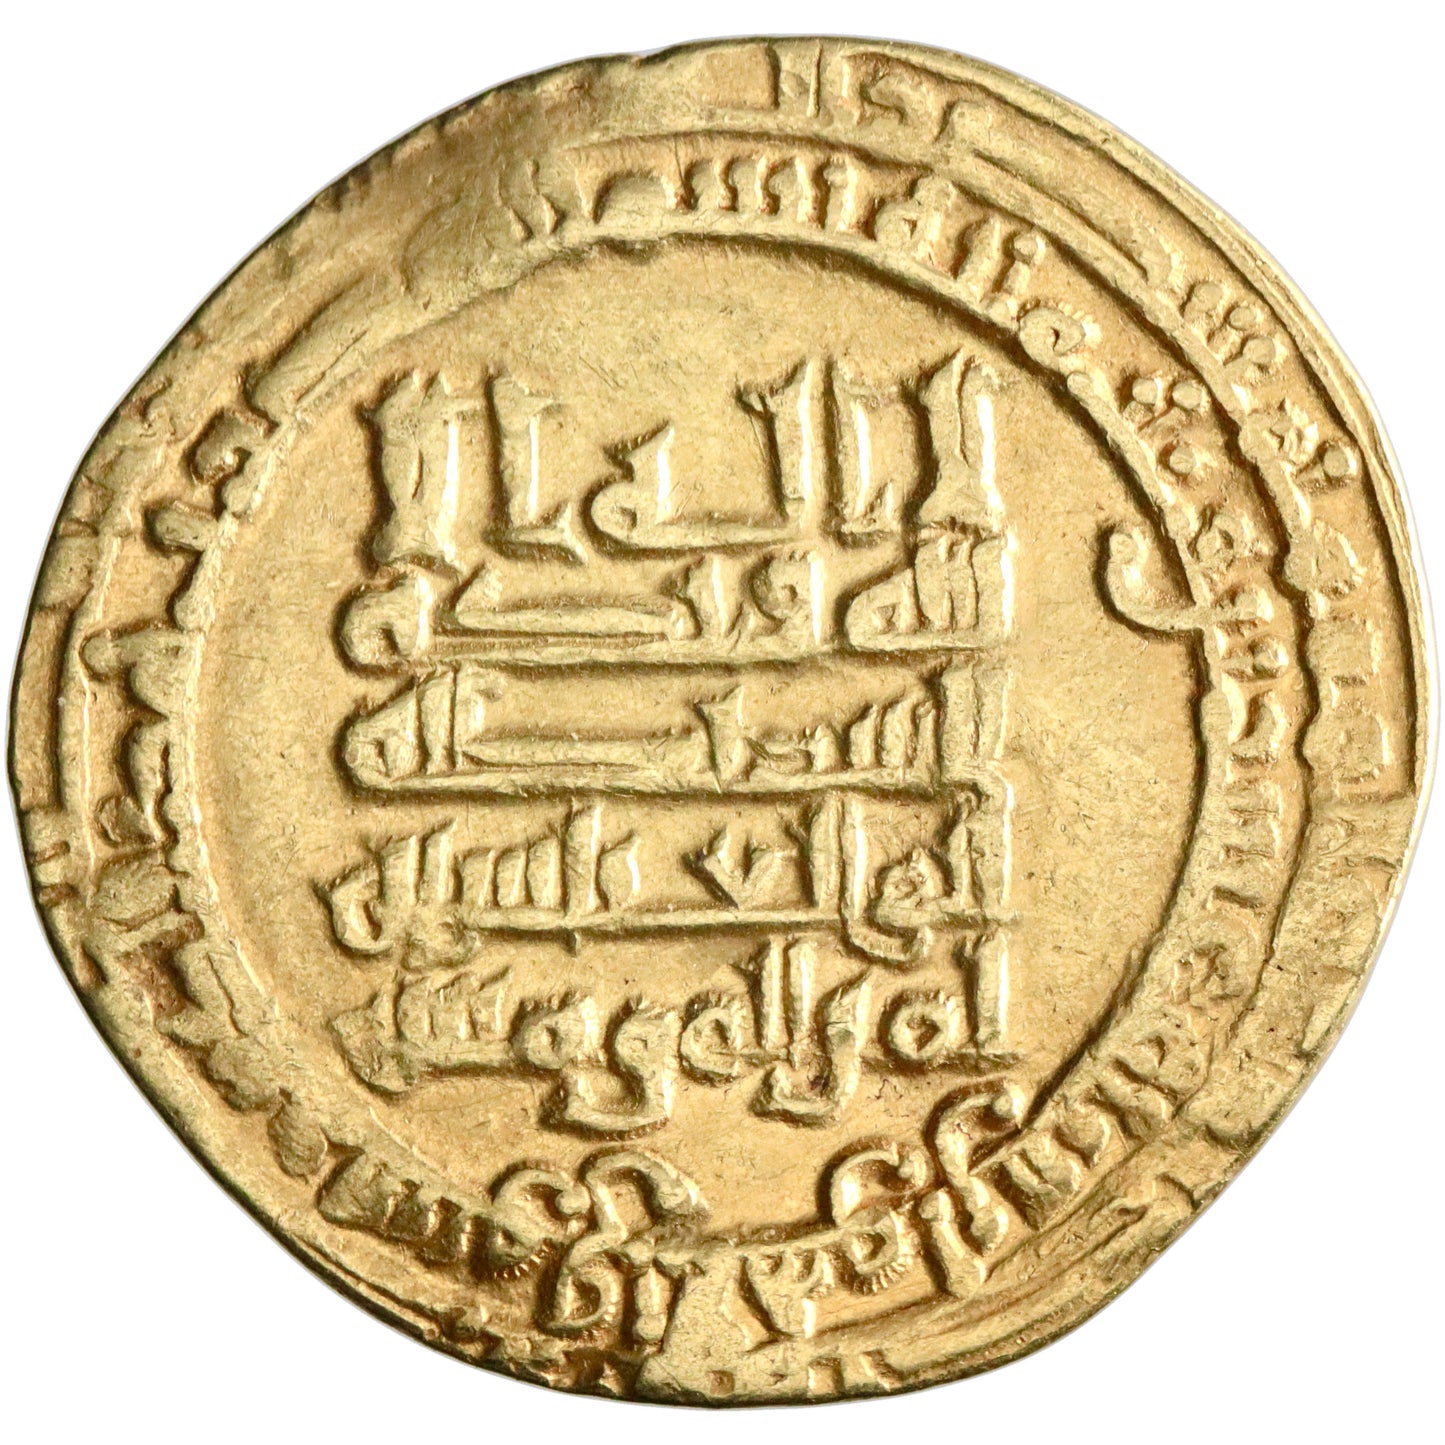 Abbasid, al-Muqtadir, gold dinar, Suq al-Ahwaz mint, AH 320, citing 'Amid al-Dawla and Abu al-'Abbas